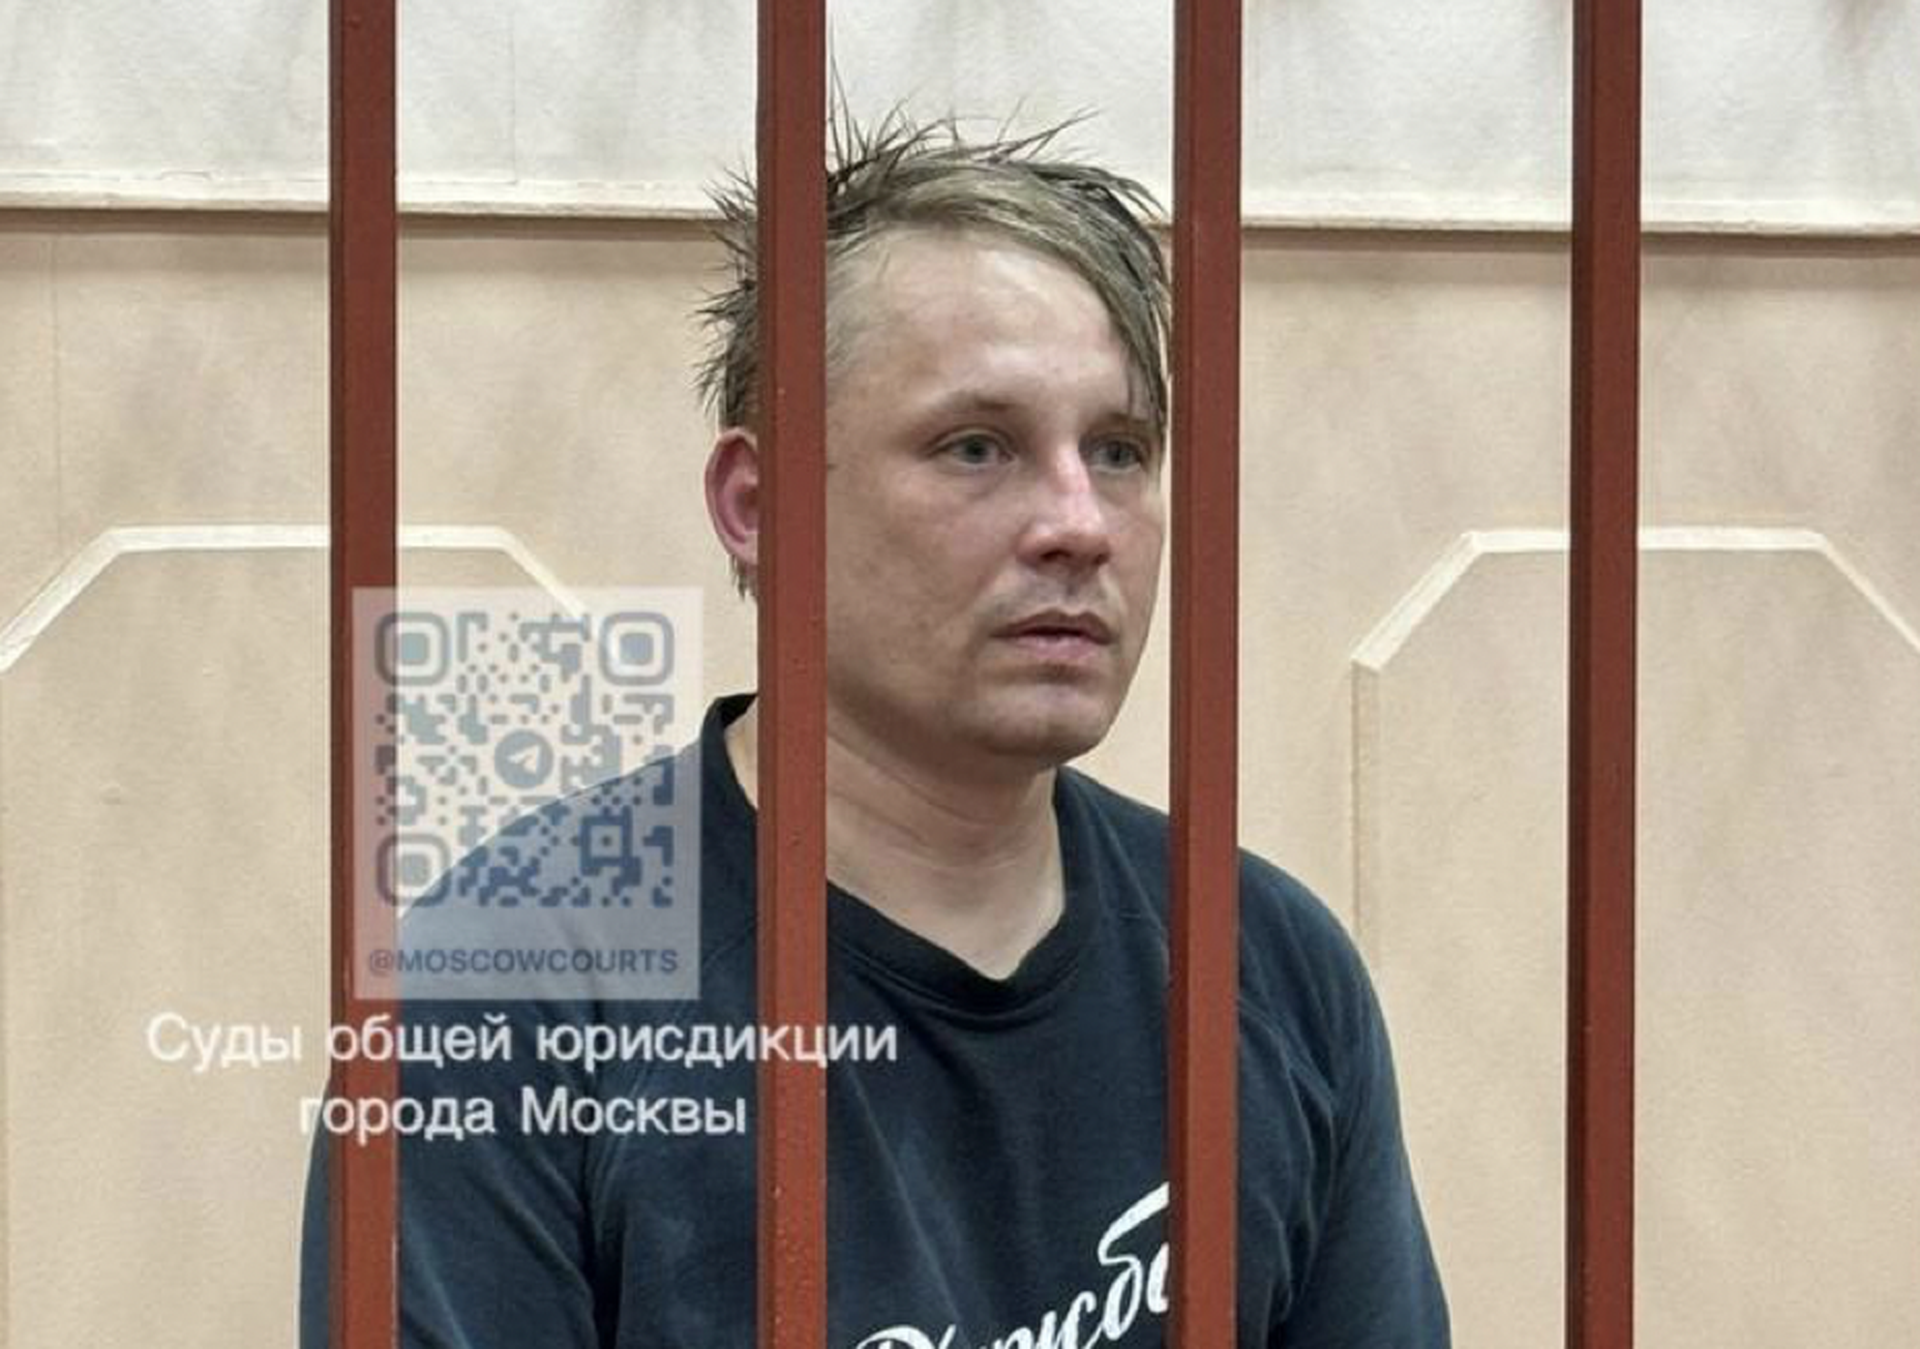 Басманный суд арестовал продюсера агентства Reuters